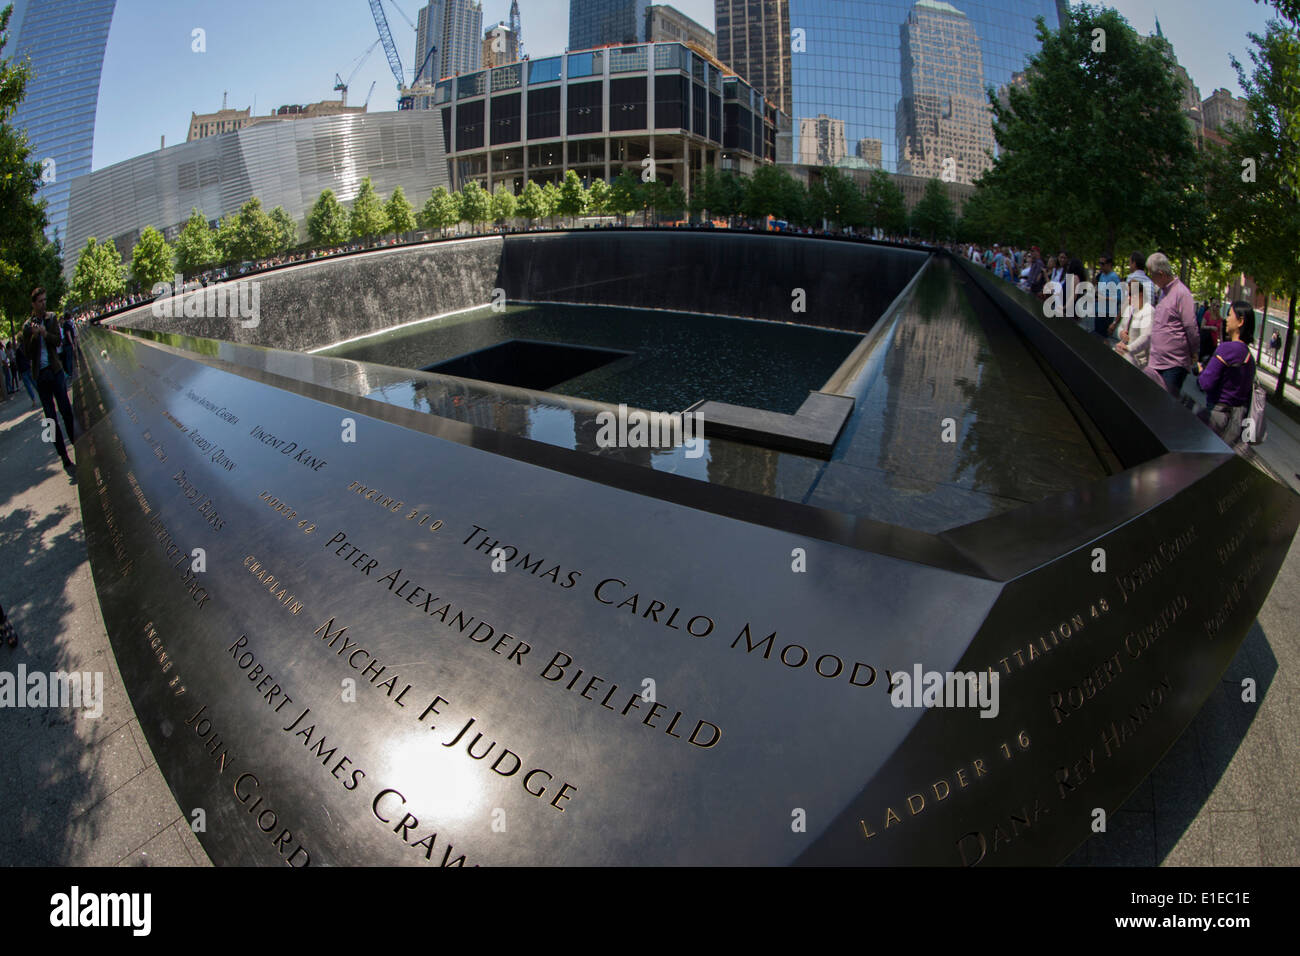 Distorsionada por objetivo ojo de pez, los nombres de las víctimas en el Memorial del 9/11 en Nueva York, asesinado en las ubicaciones de los ataques terroristas perpetrados el 11 de septiembre de 2001. El 11 de septiembre Nacional Memorial es un homenaje de recuerdo y honor a los casi 3.000 personas que murieron en los ataques terroristas del 11 de septiembre de 2001, en el World Trade Center, cerca de Shanksville, Pensilvania, y en el Pentágono, así como las seis personas que murieron en el World Trade Center en febrero de 1993. Foto de stock